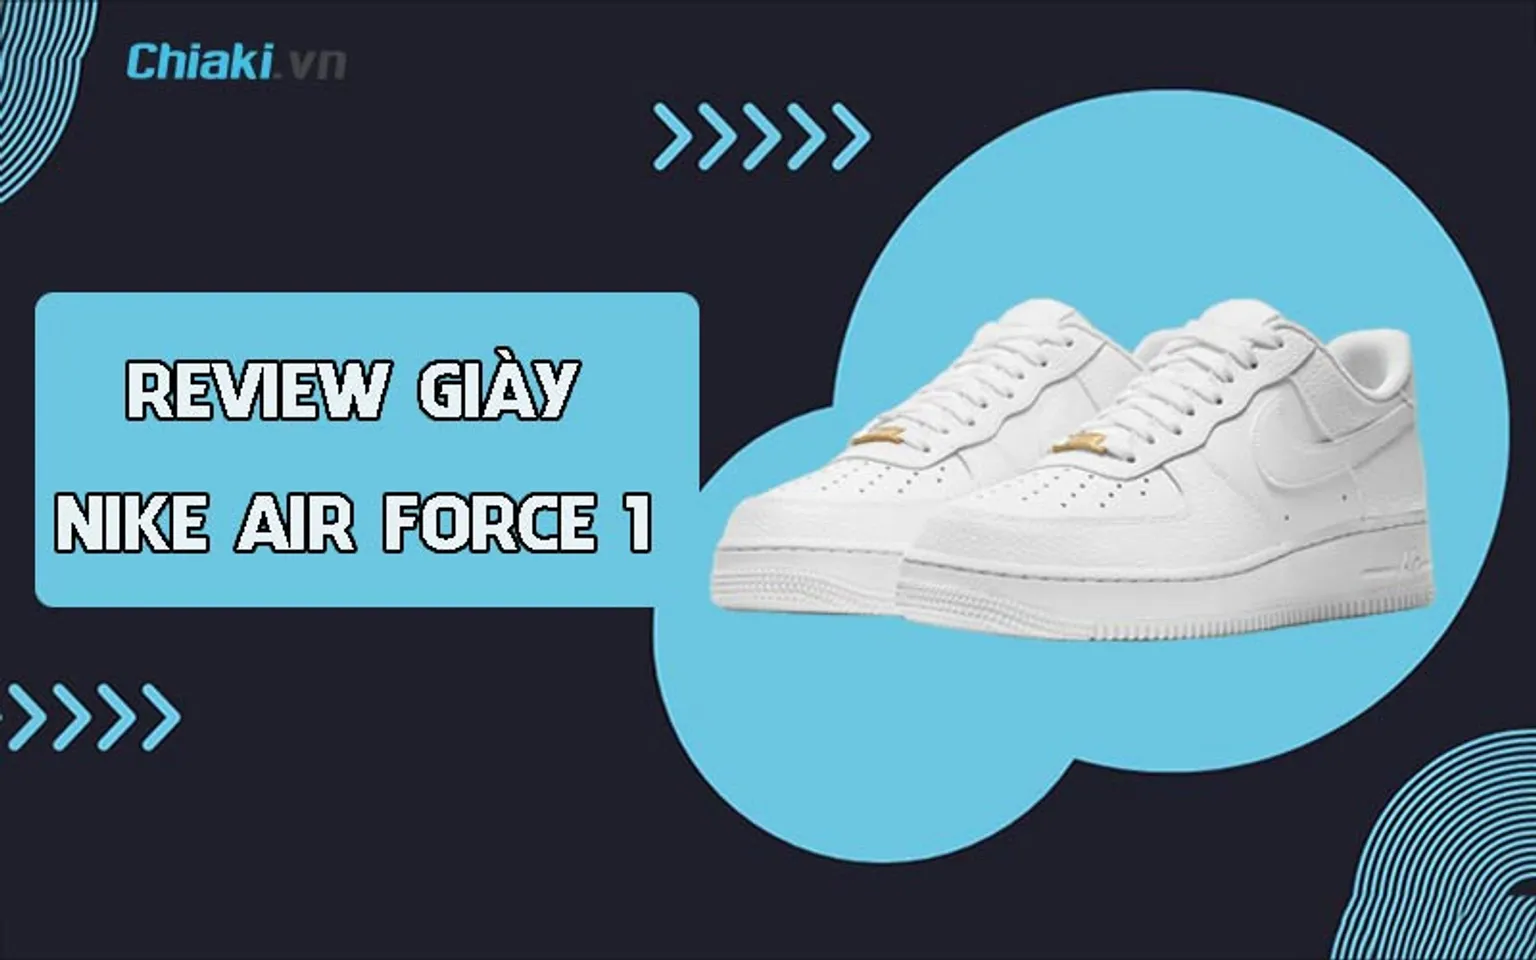 Review giày Nike Air Force 1 chi tiết, chân thực từ A đến Z